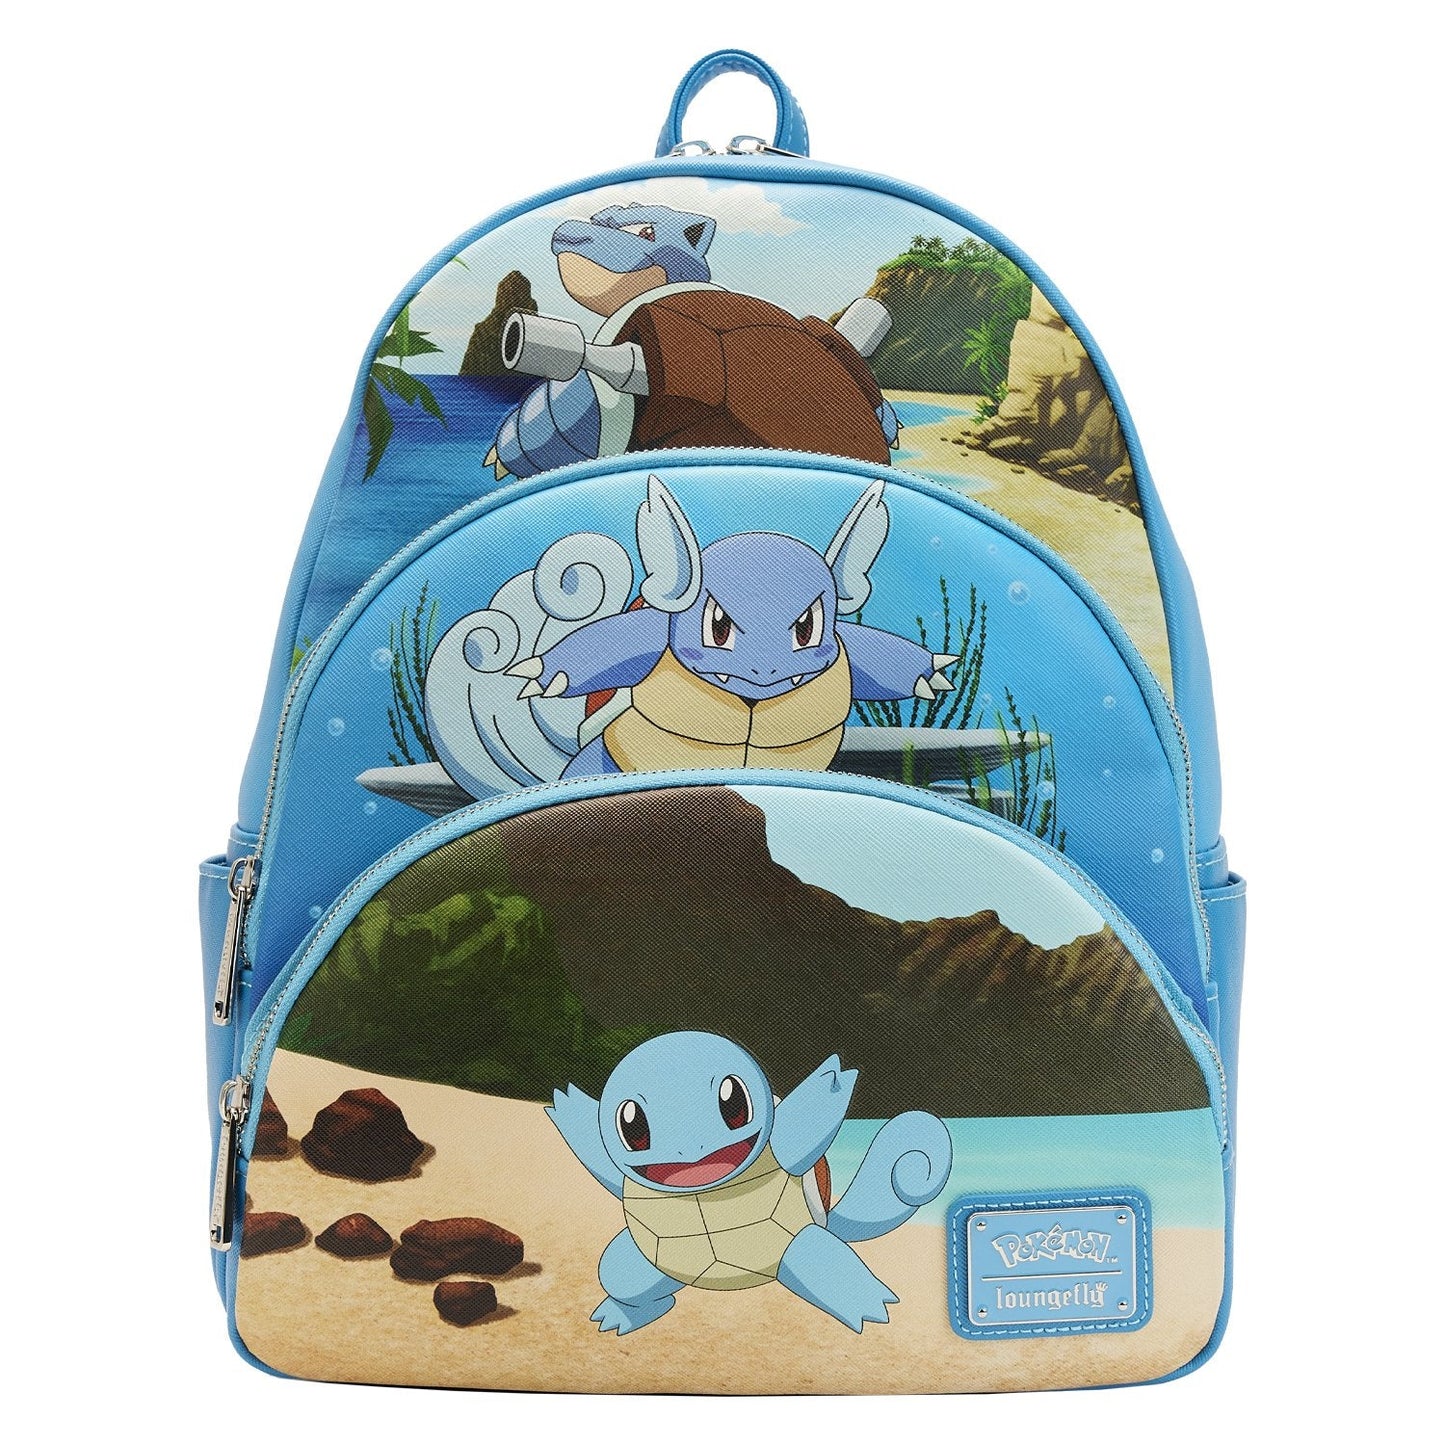 Squirtle Evolution triple pocket backpack